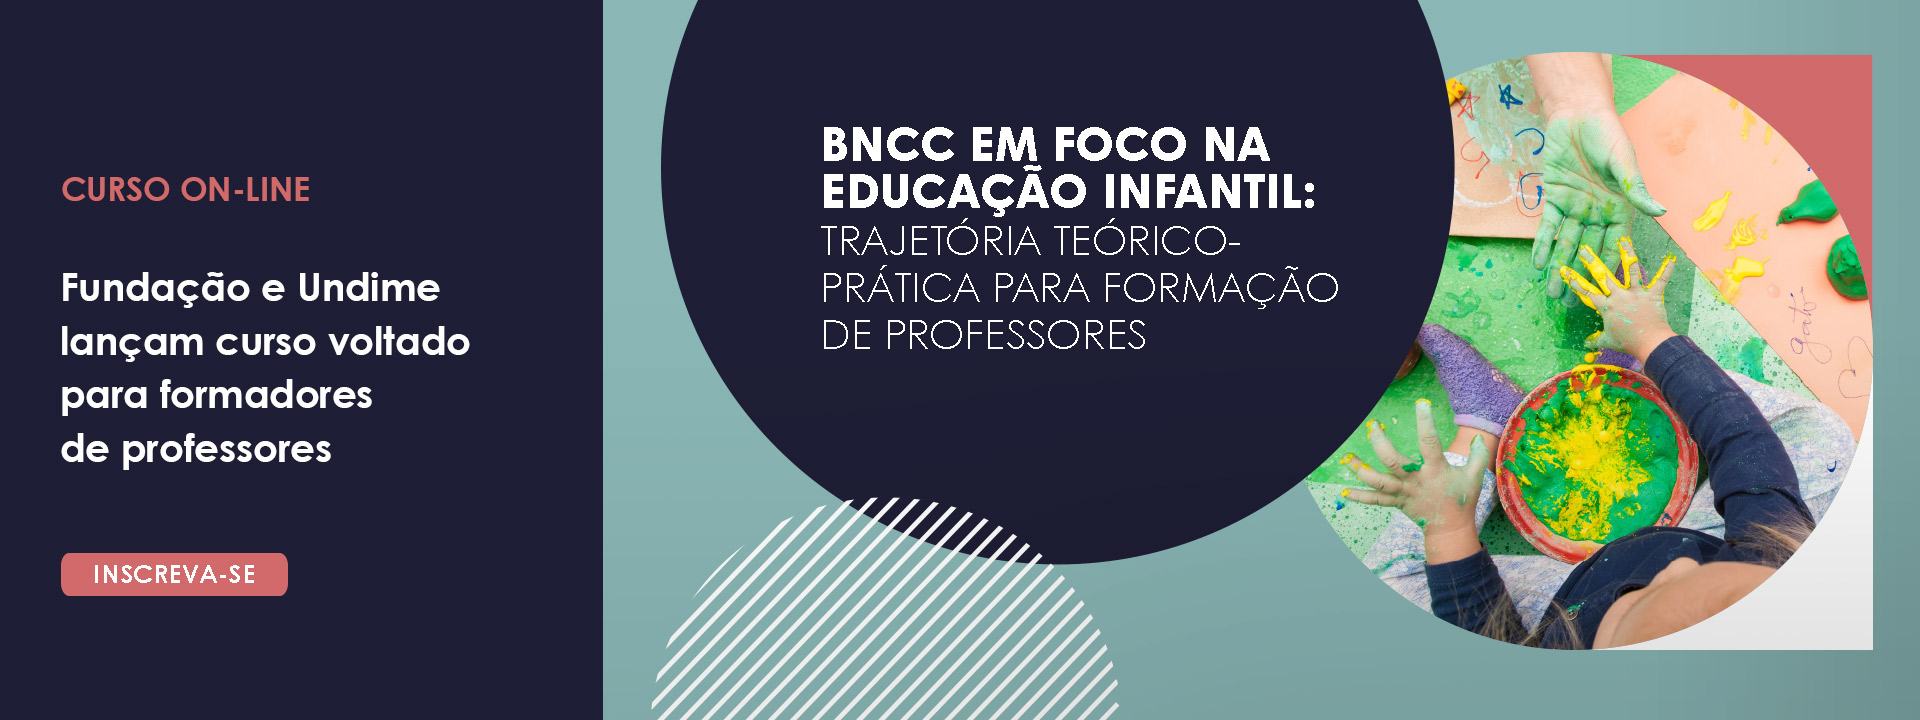 Banner do curso BNCC em foco na Educação Infantil